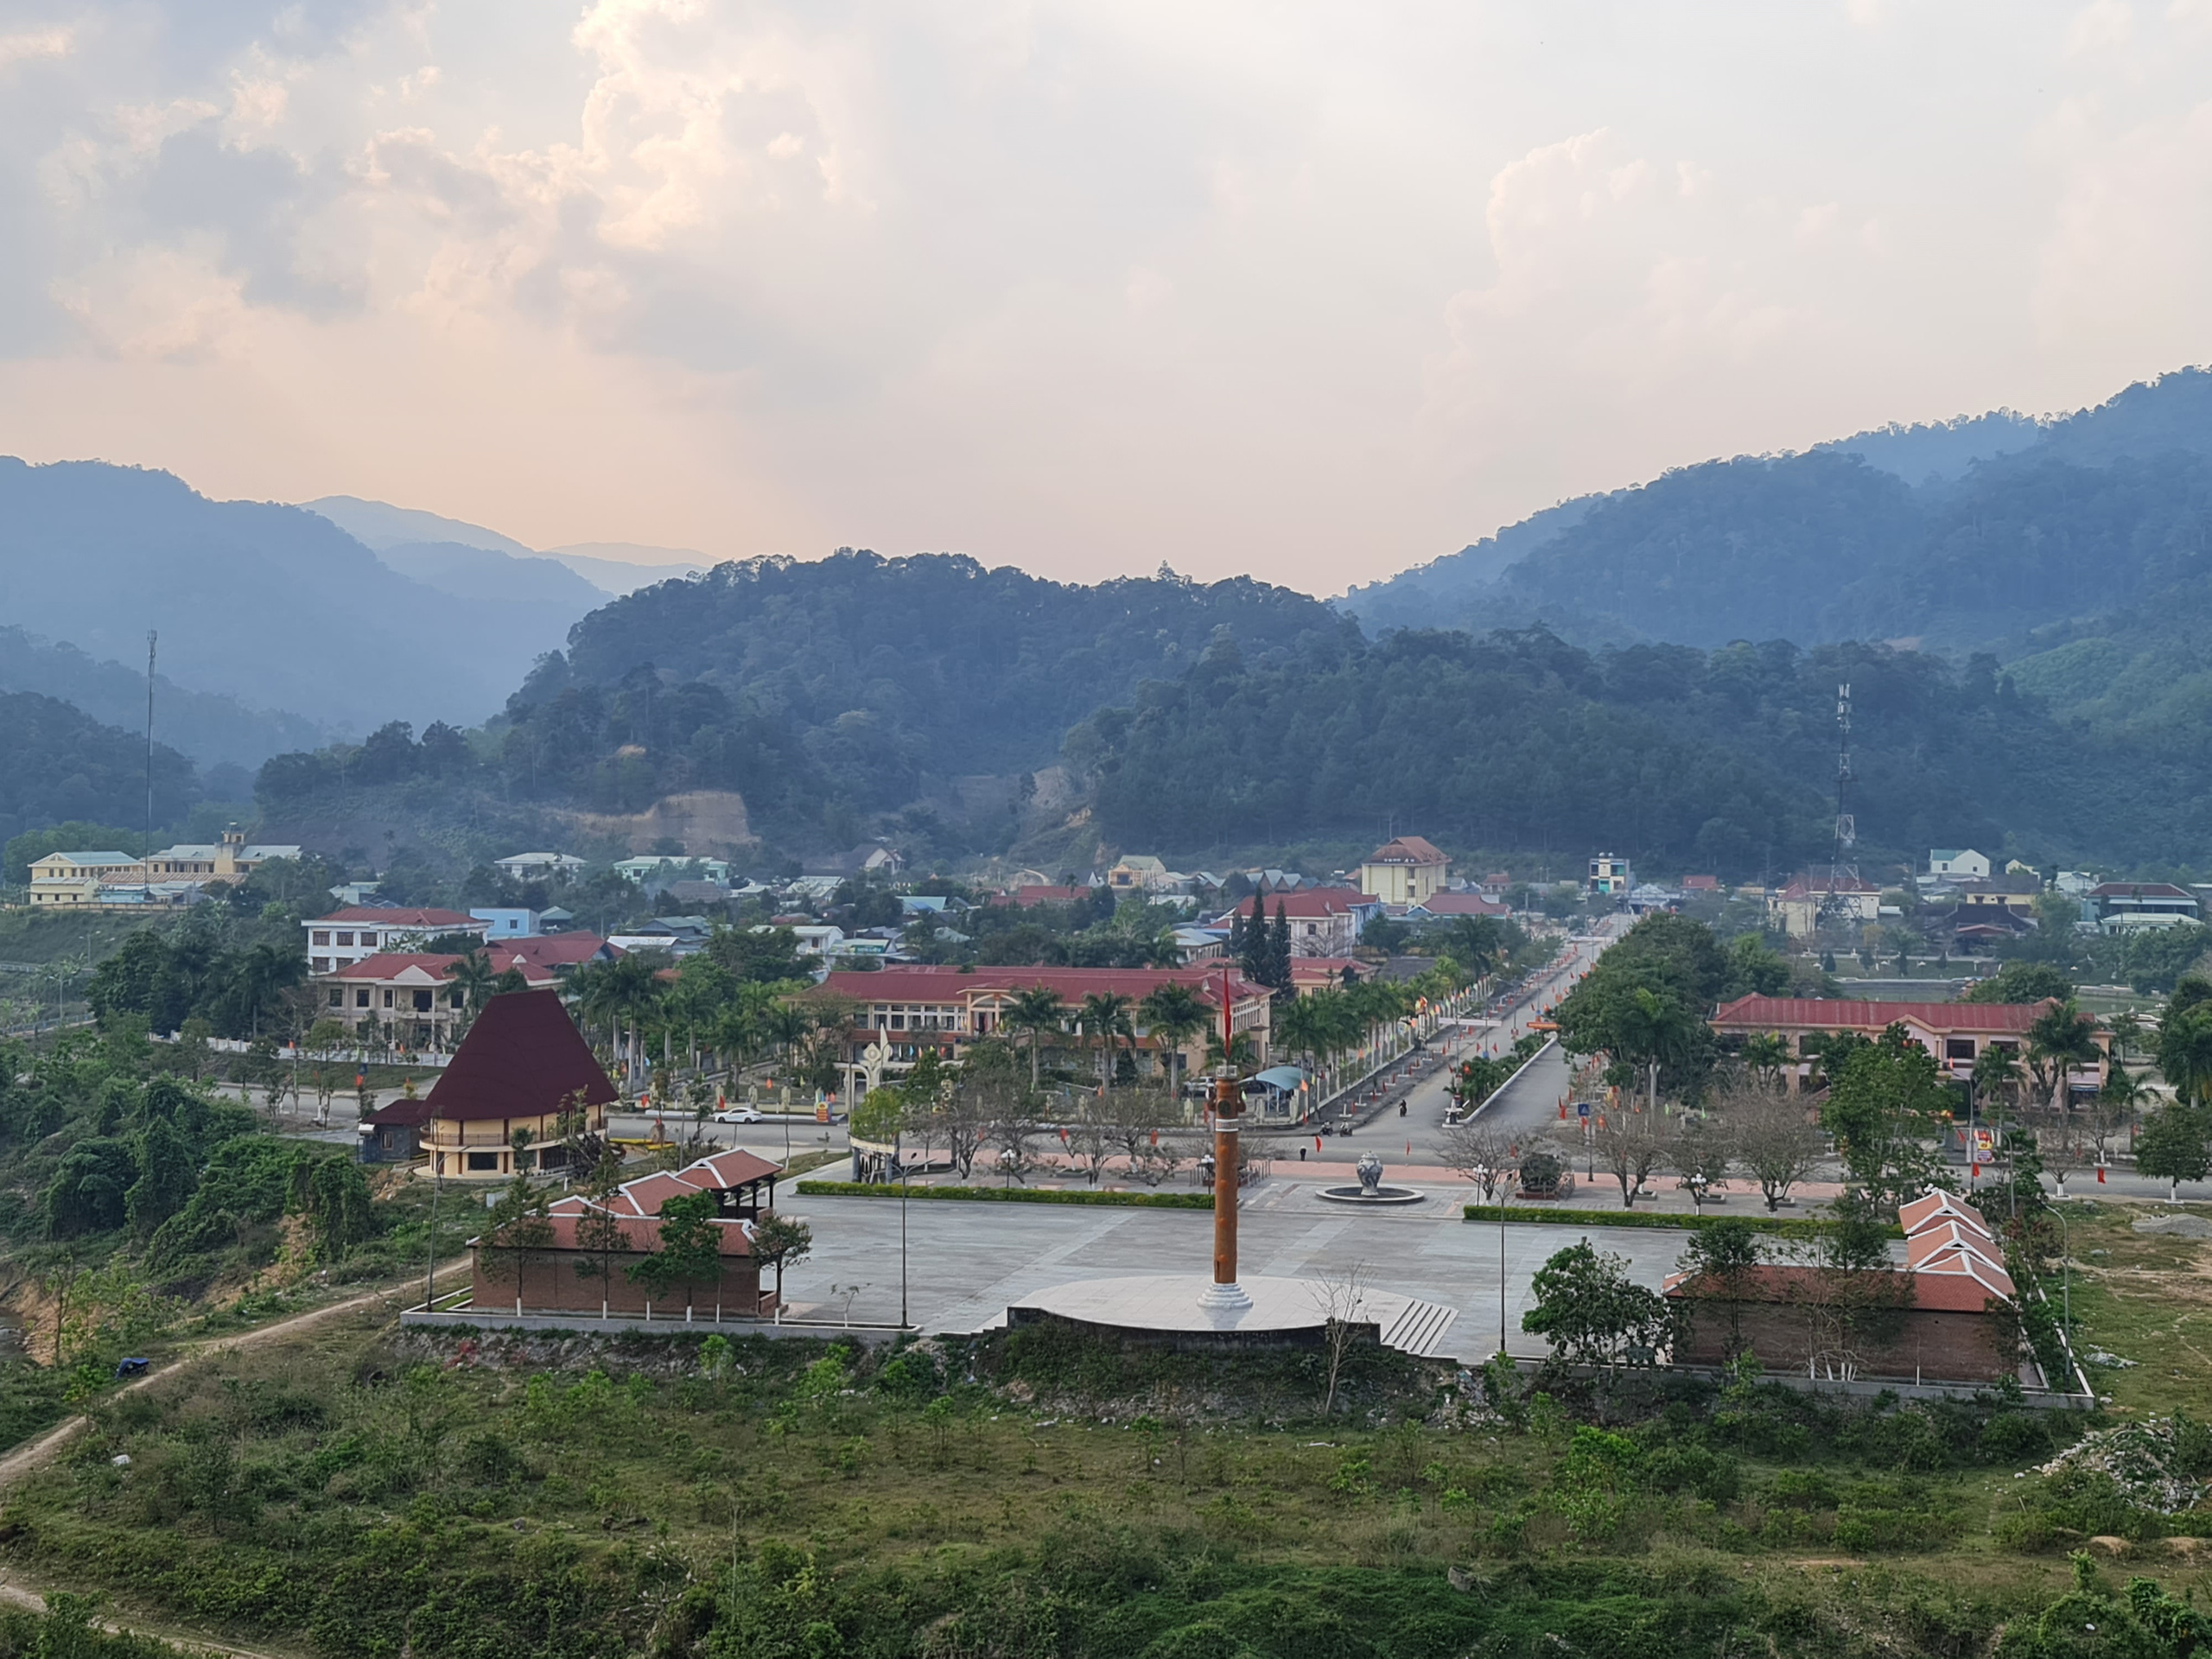 Quảng Nam: Triển khai 100 dự án nhà ở, có cả các huyện miền núi - Ảnh 2.